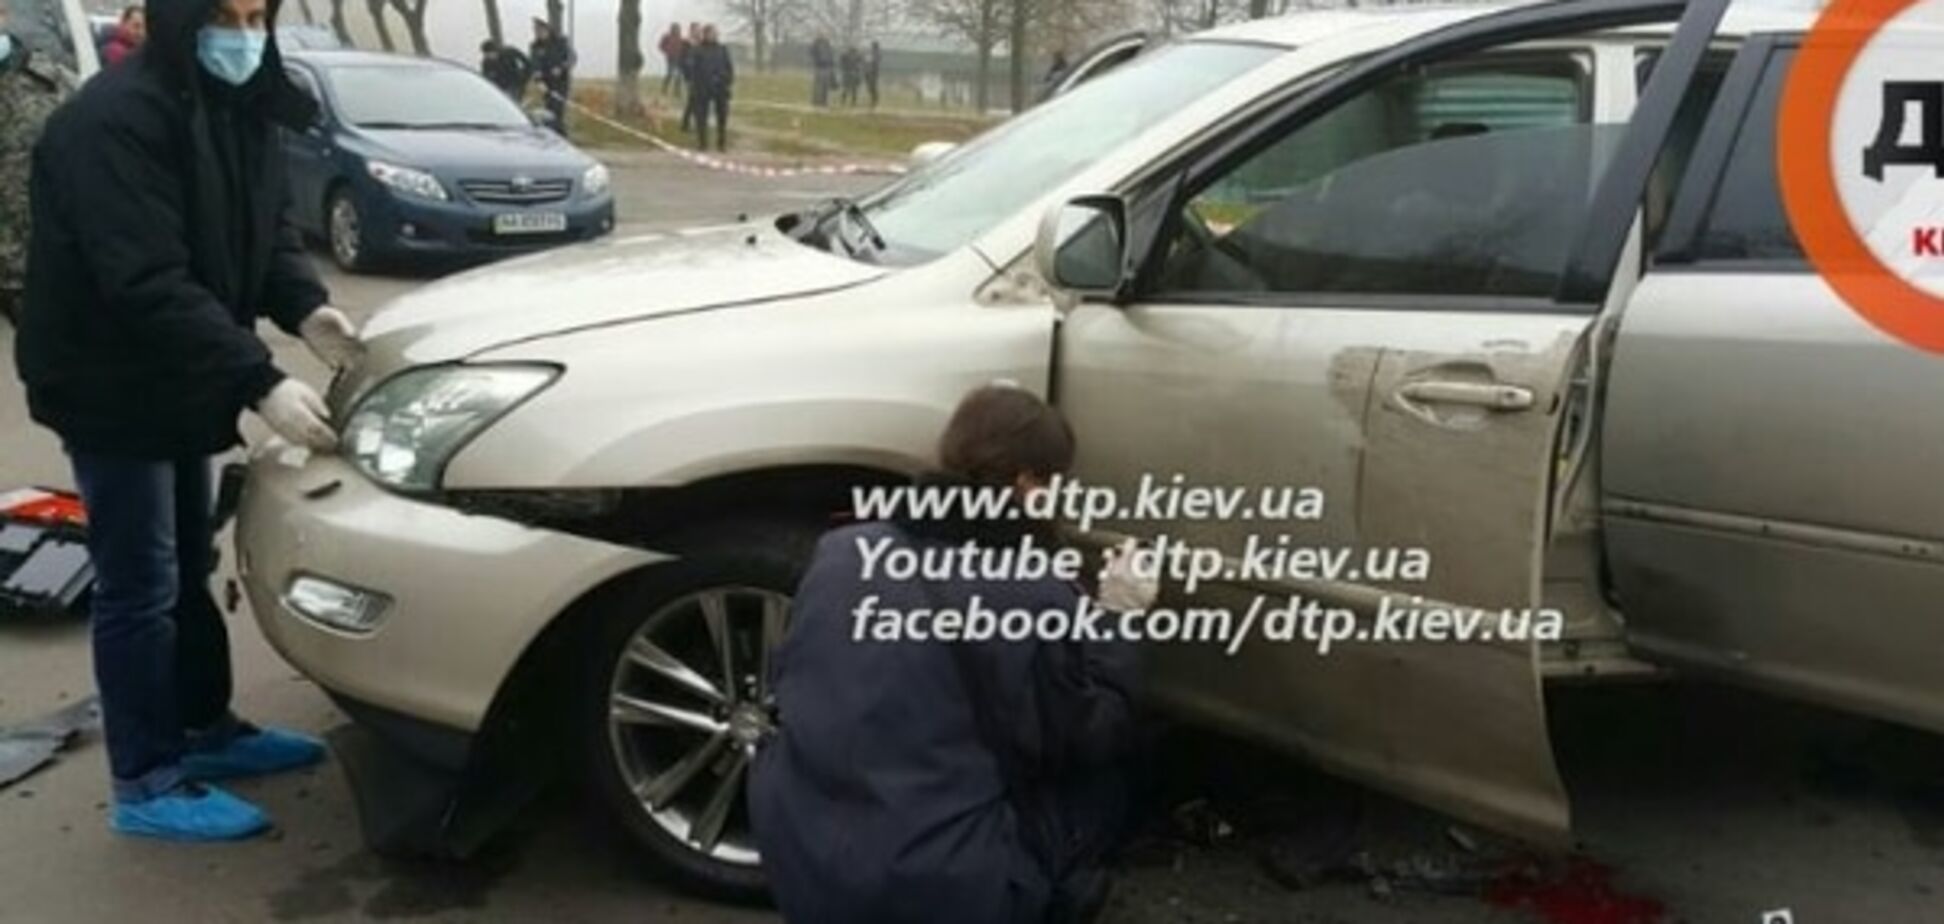 З'явилися моторошні фото з місця вибуху автомобіля в Києві